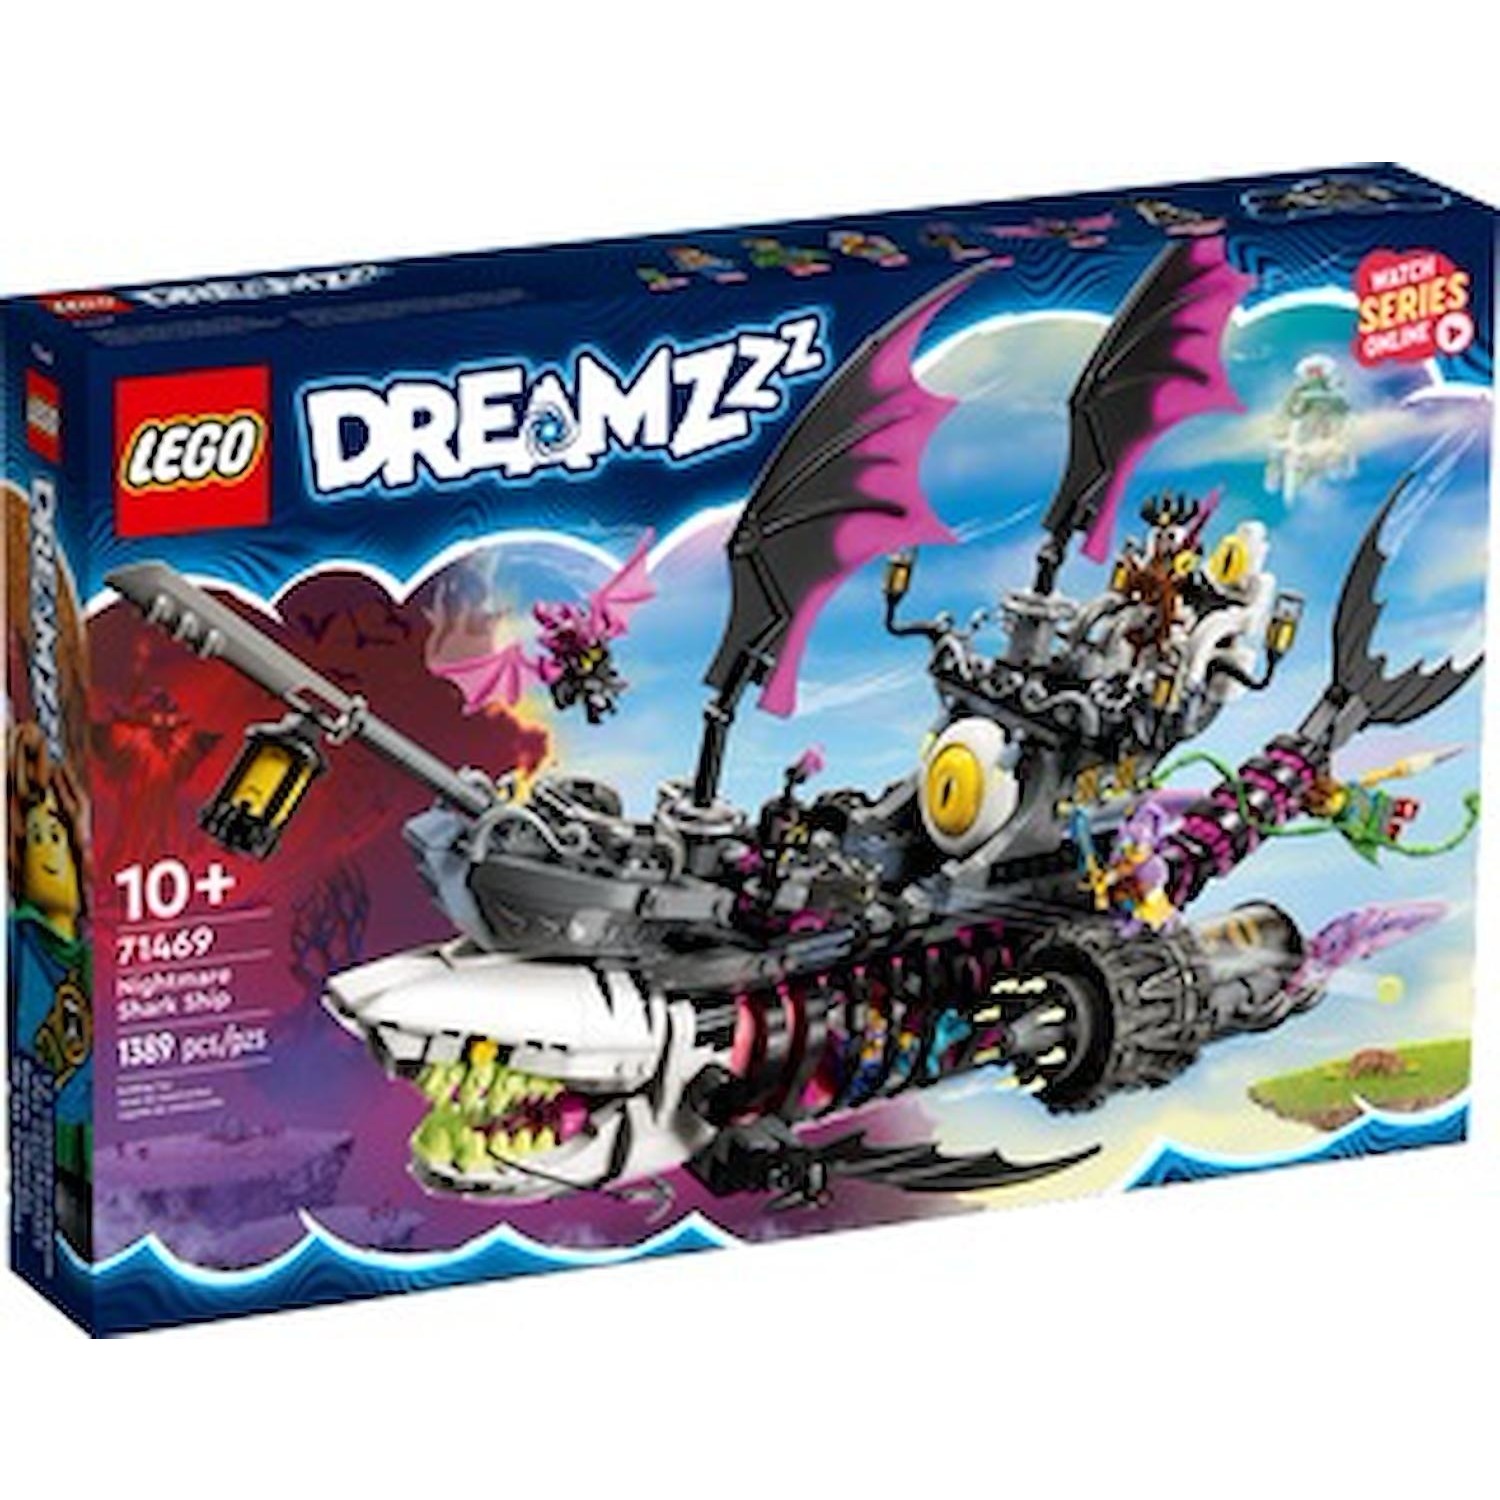 Immagine per Lego Dreamzzz Nave-Squalo Nightmare da DIMOStore